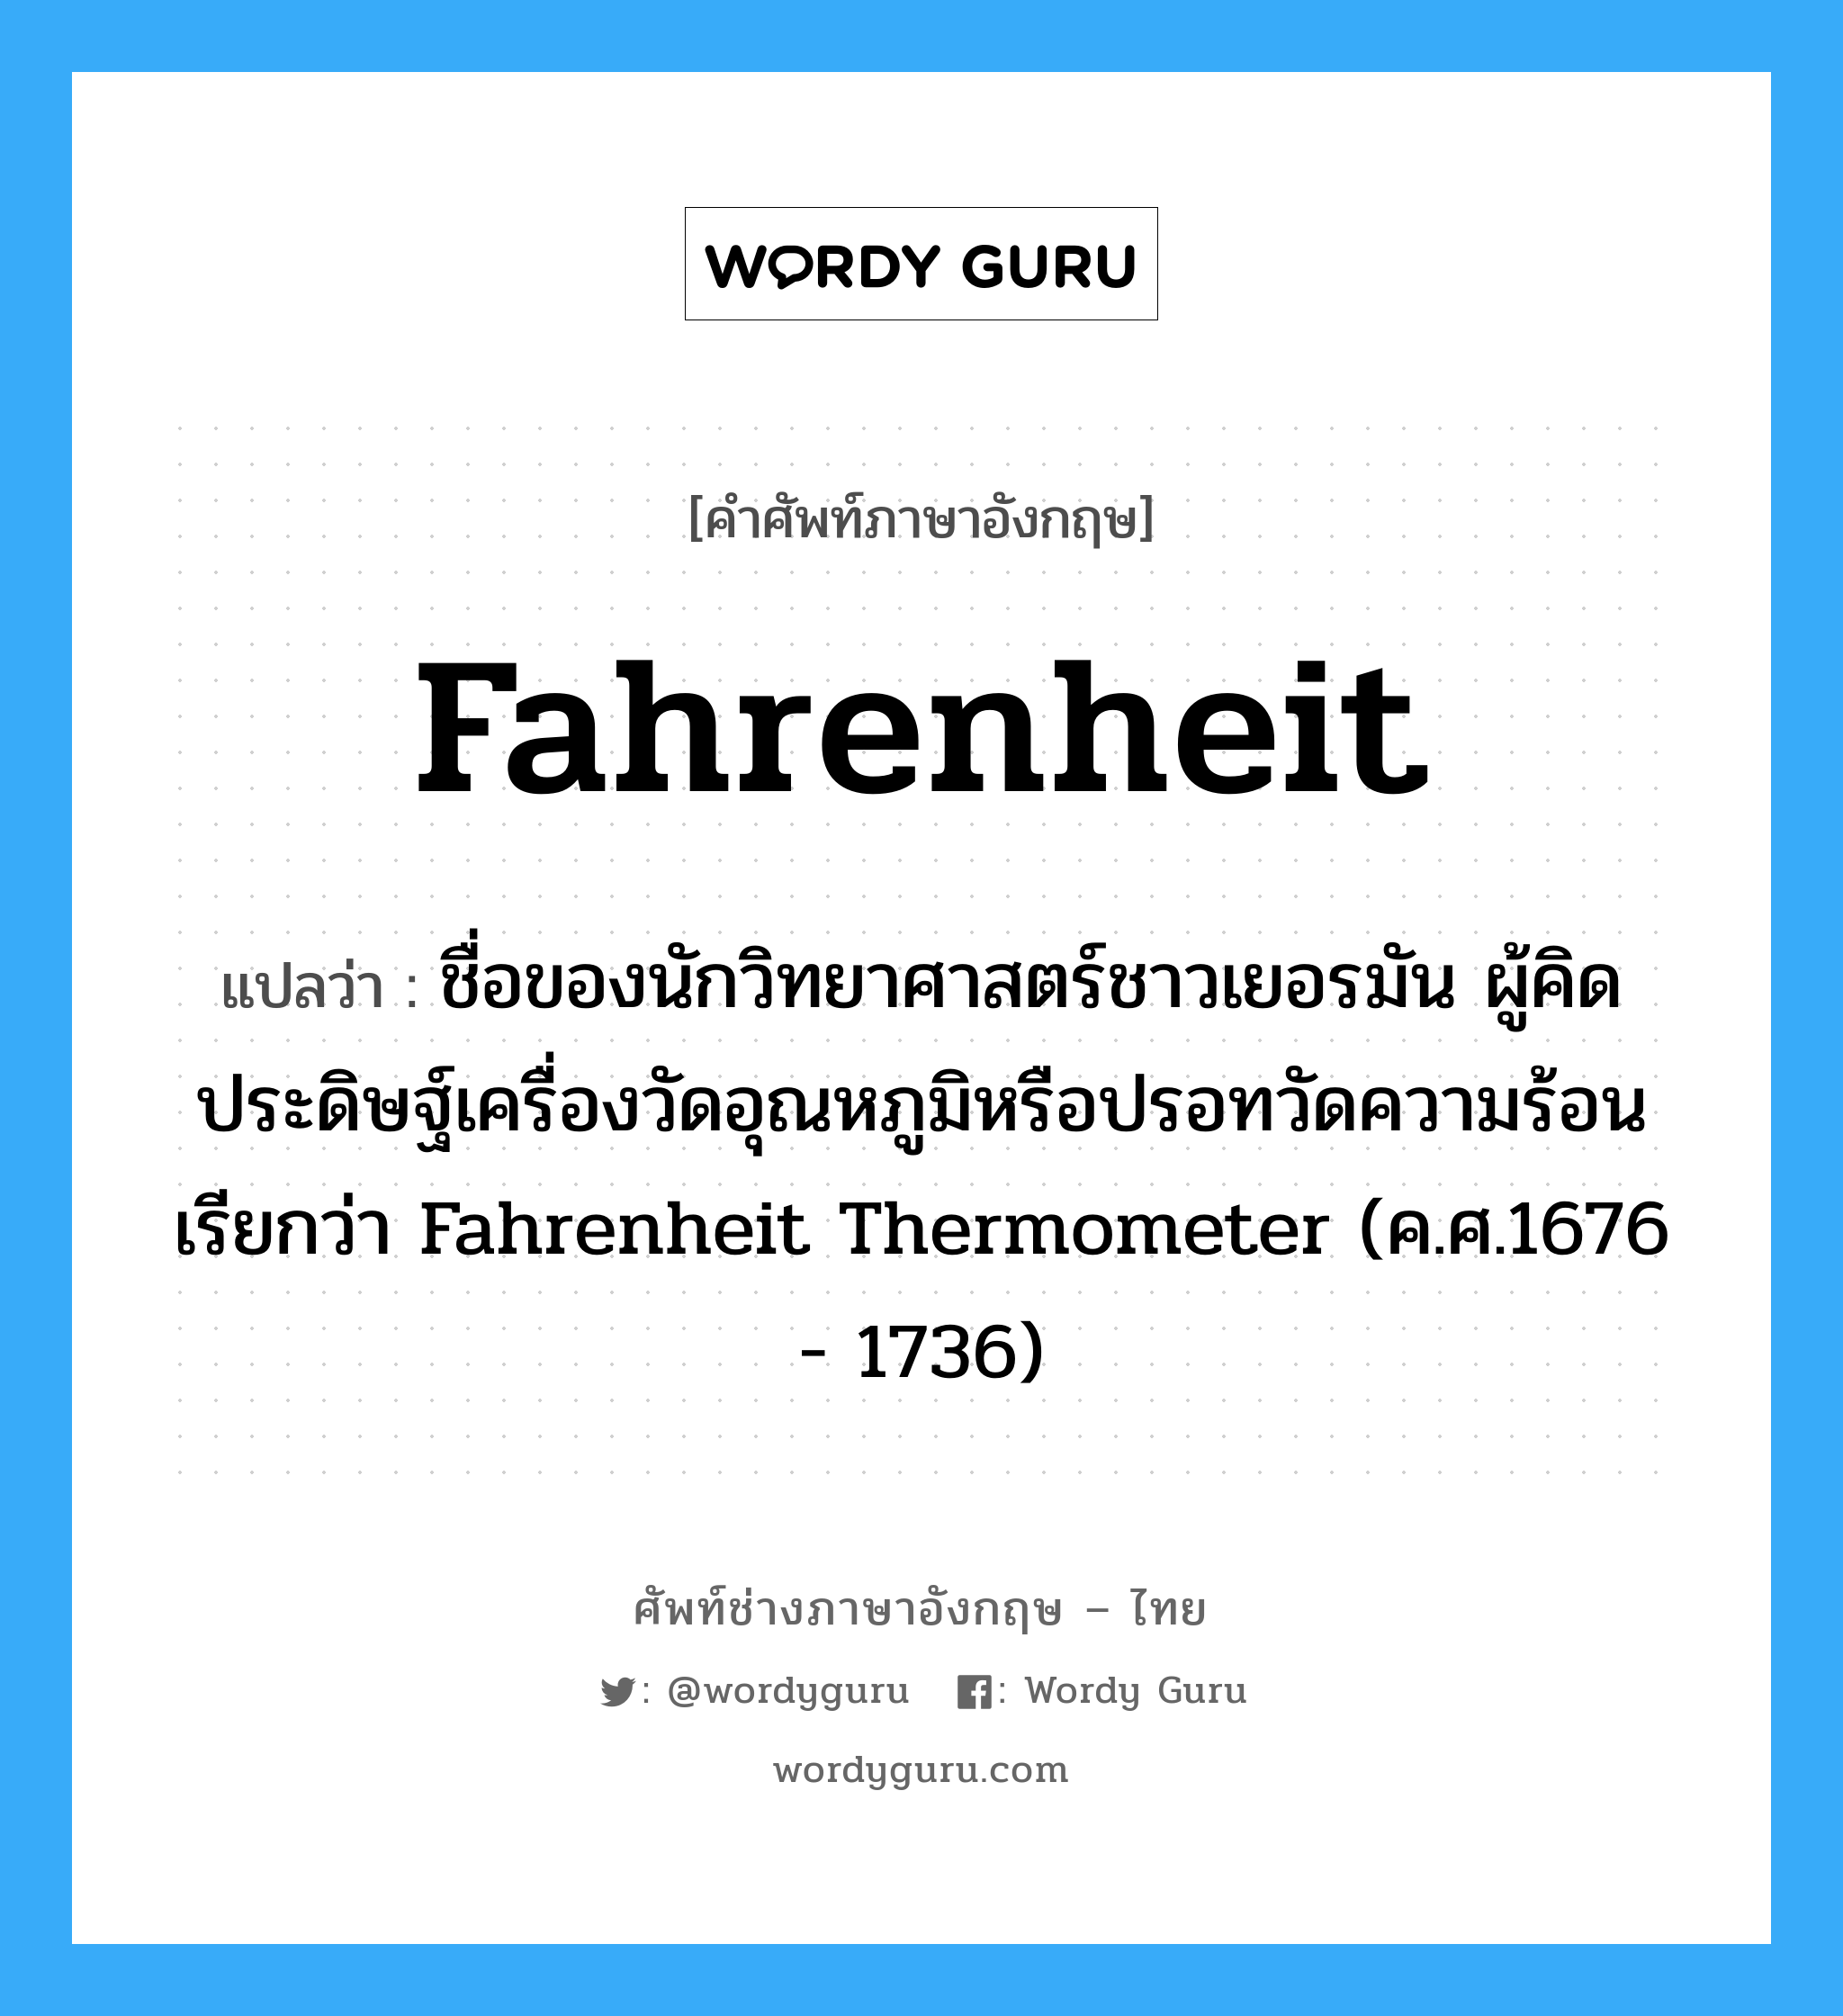 Fahrenheit แปลว่า?, คำศัพท์ช่างภาษาอังกฤษ - ไทย Fahrenheit คำศัพท์ภาษาอังกฤษ Fahrenheit แปลว่า ชื่อของนักวิทยาศาสตร์ชาวเยอรมัน ผู้คิดประดิษฐ์เครื่องวัดอุณหภูมิหรือปรอทวัดความร้อนเรียกว่า Fahrenheit Thermometer (ค.ศ.1676 - 1736)